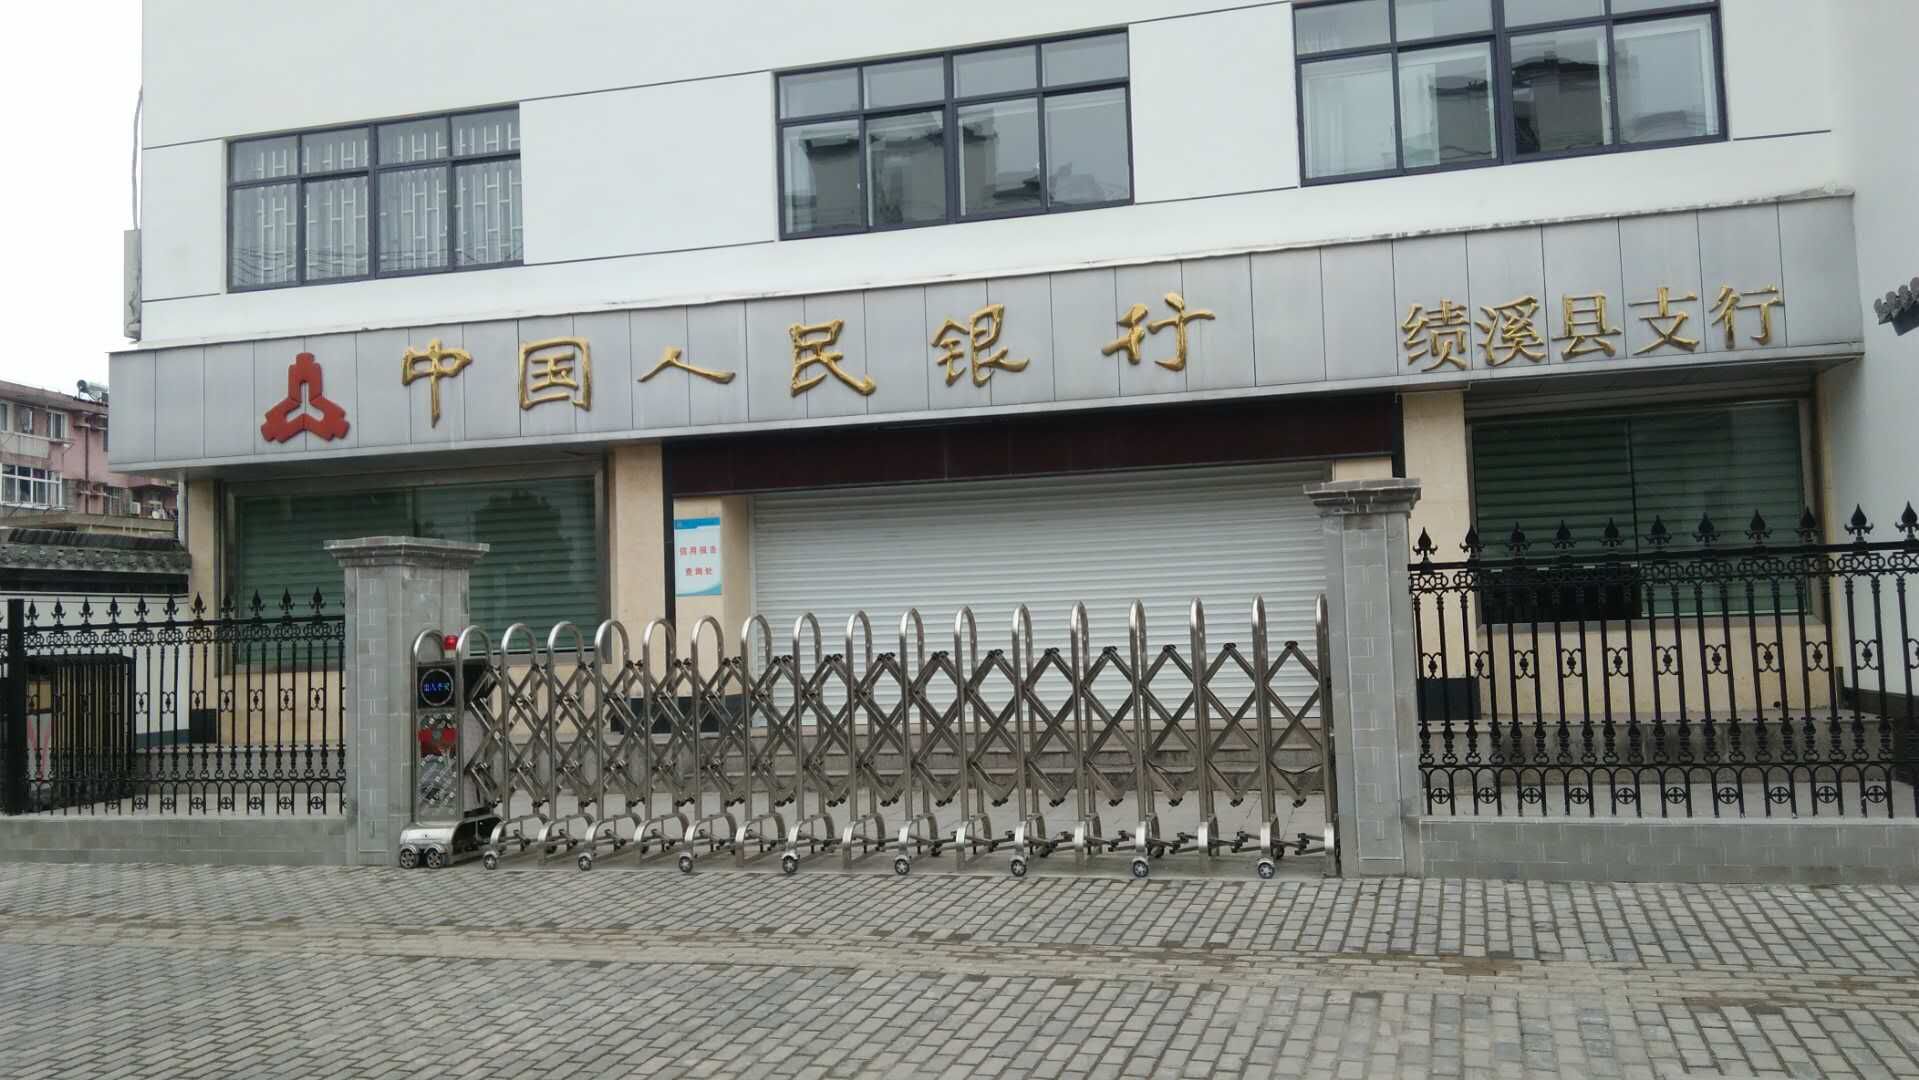 中国人民银行绩溪县支行